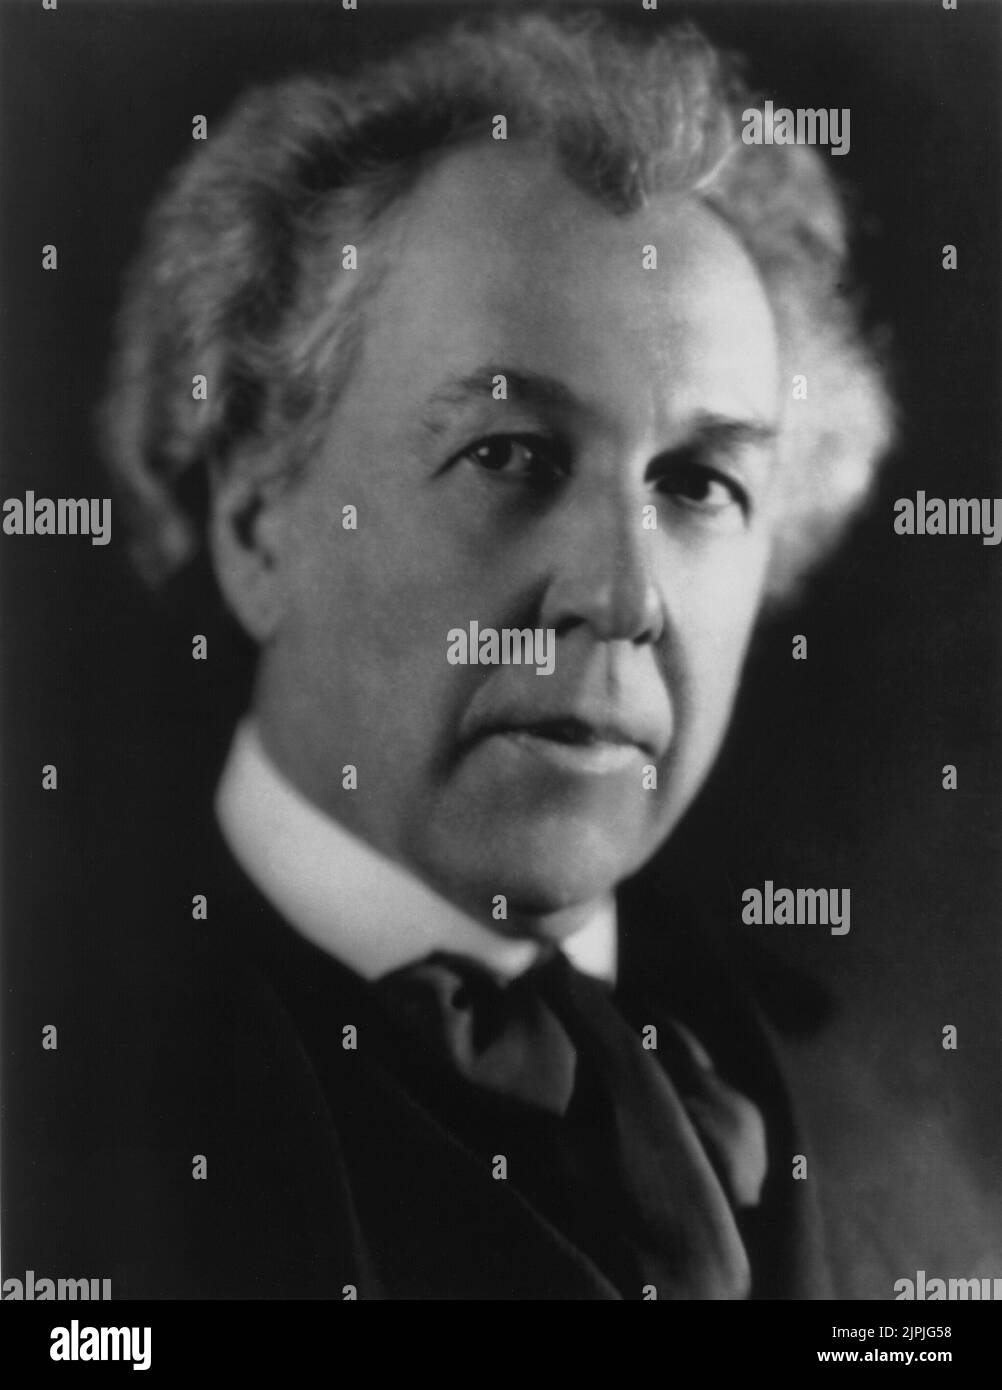 1923 , diciembre , EE.UU. : El célebre arquitecto norteamericano Frank Lloyd WRIGHT ( 1869 - 1959 ) , creador del Museo Guggenheim de Nueva York ( 1946 - 1959 ). - ARCHITETTO - ARCHITETTURA - retrato - ritratto - corbata - cravatta - bufanda - pelo blanco - capelli bianchi ---- Archivio GBB Foto de stock